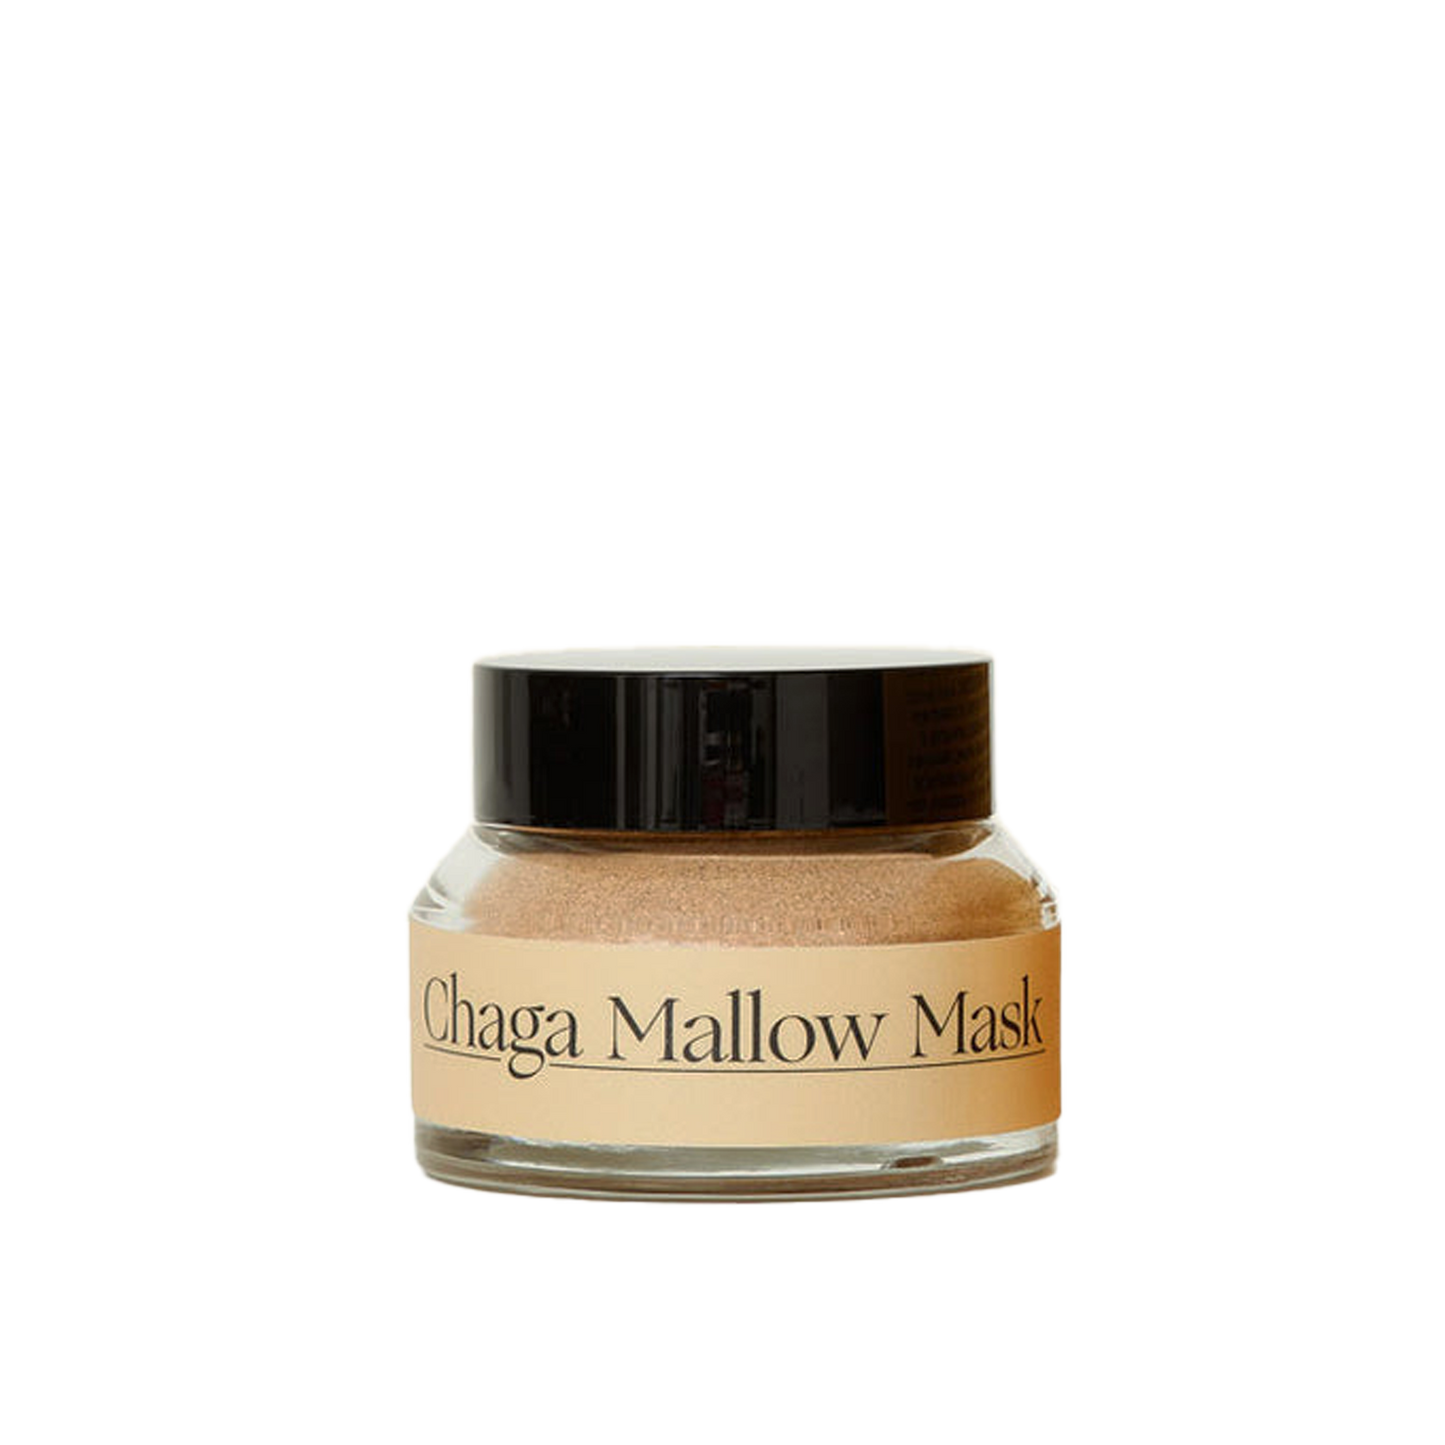 Chaga Mallow Mask 40g